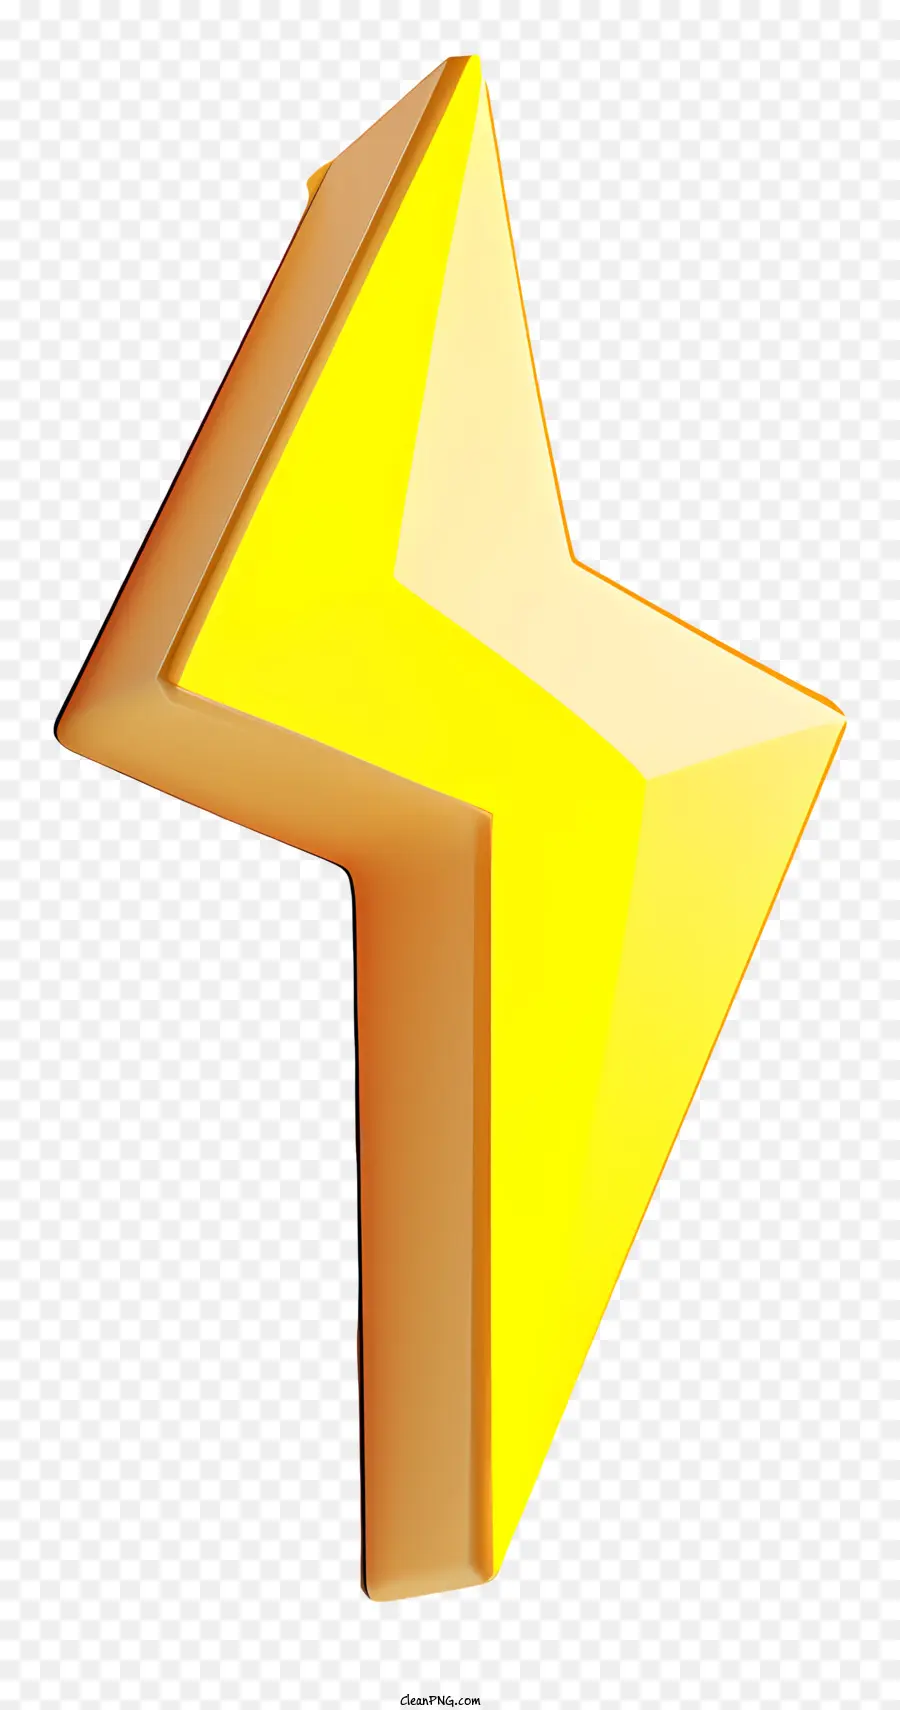 Freccia Gialla - Freccia gialla lucida che punta verso il basso sul punto